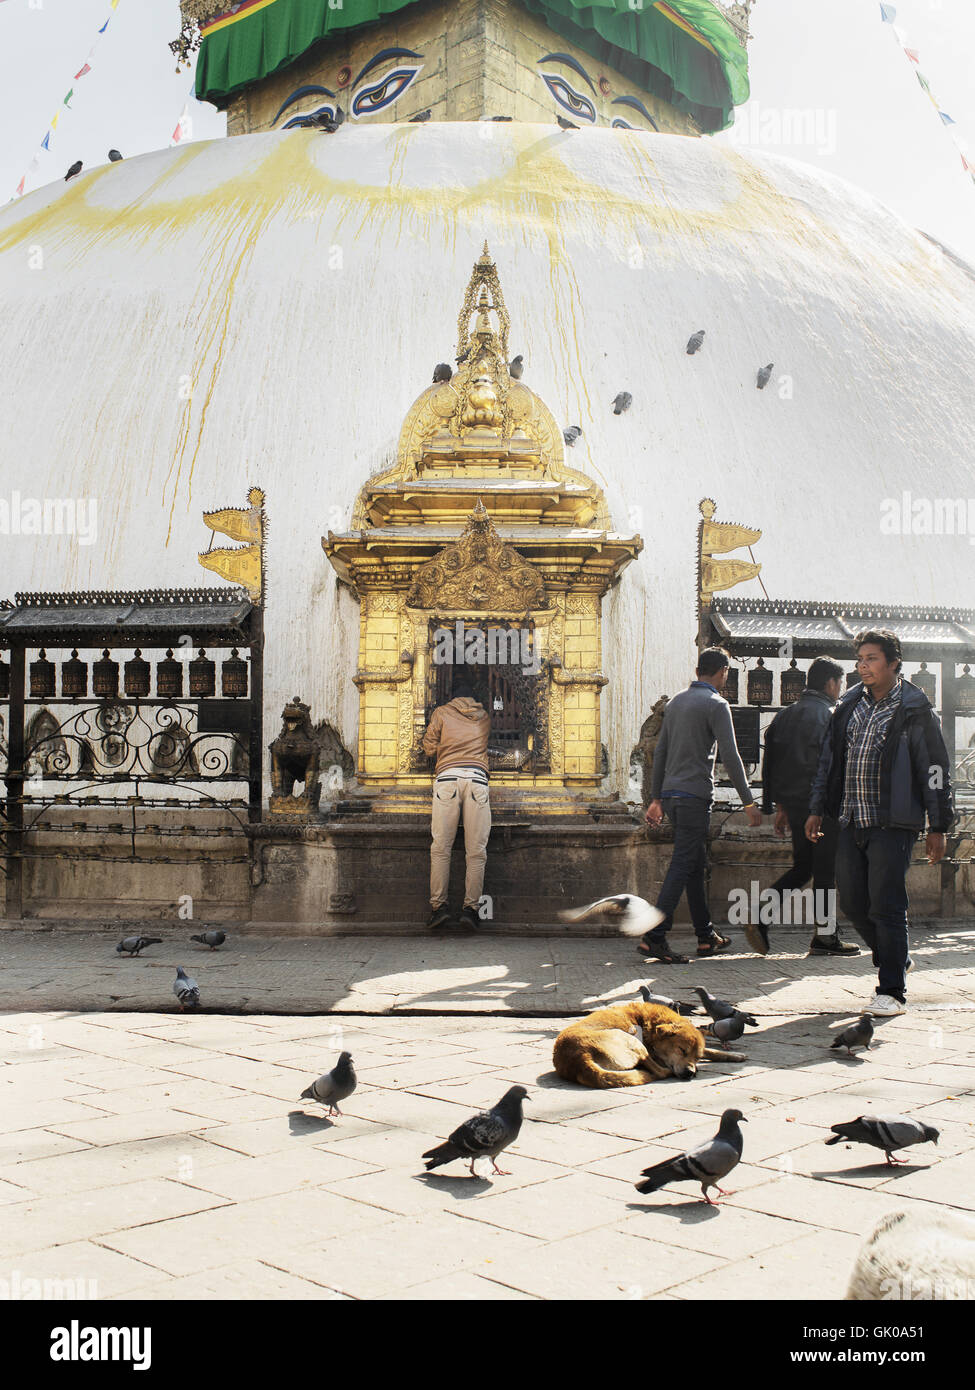 Al di fuori di una pagoda a Lukla, Nepal Foto Stock